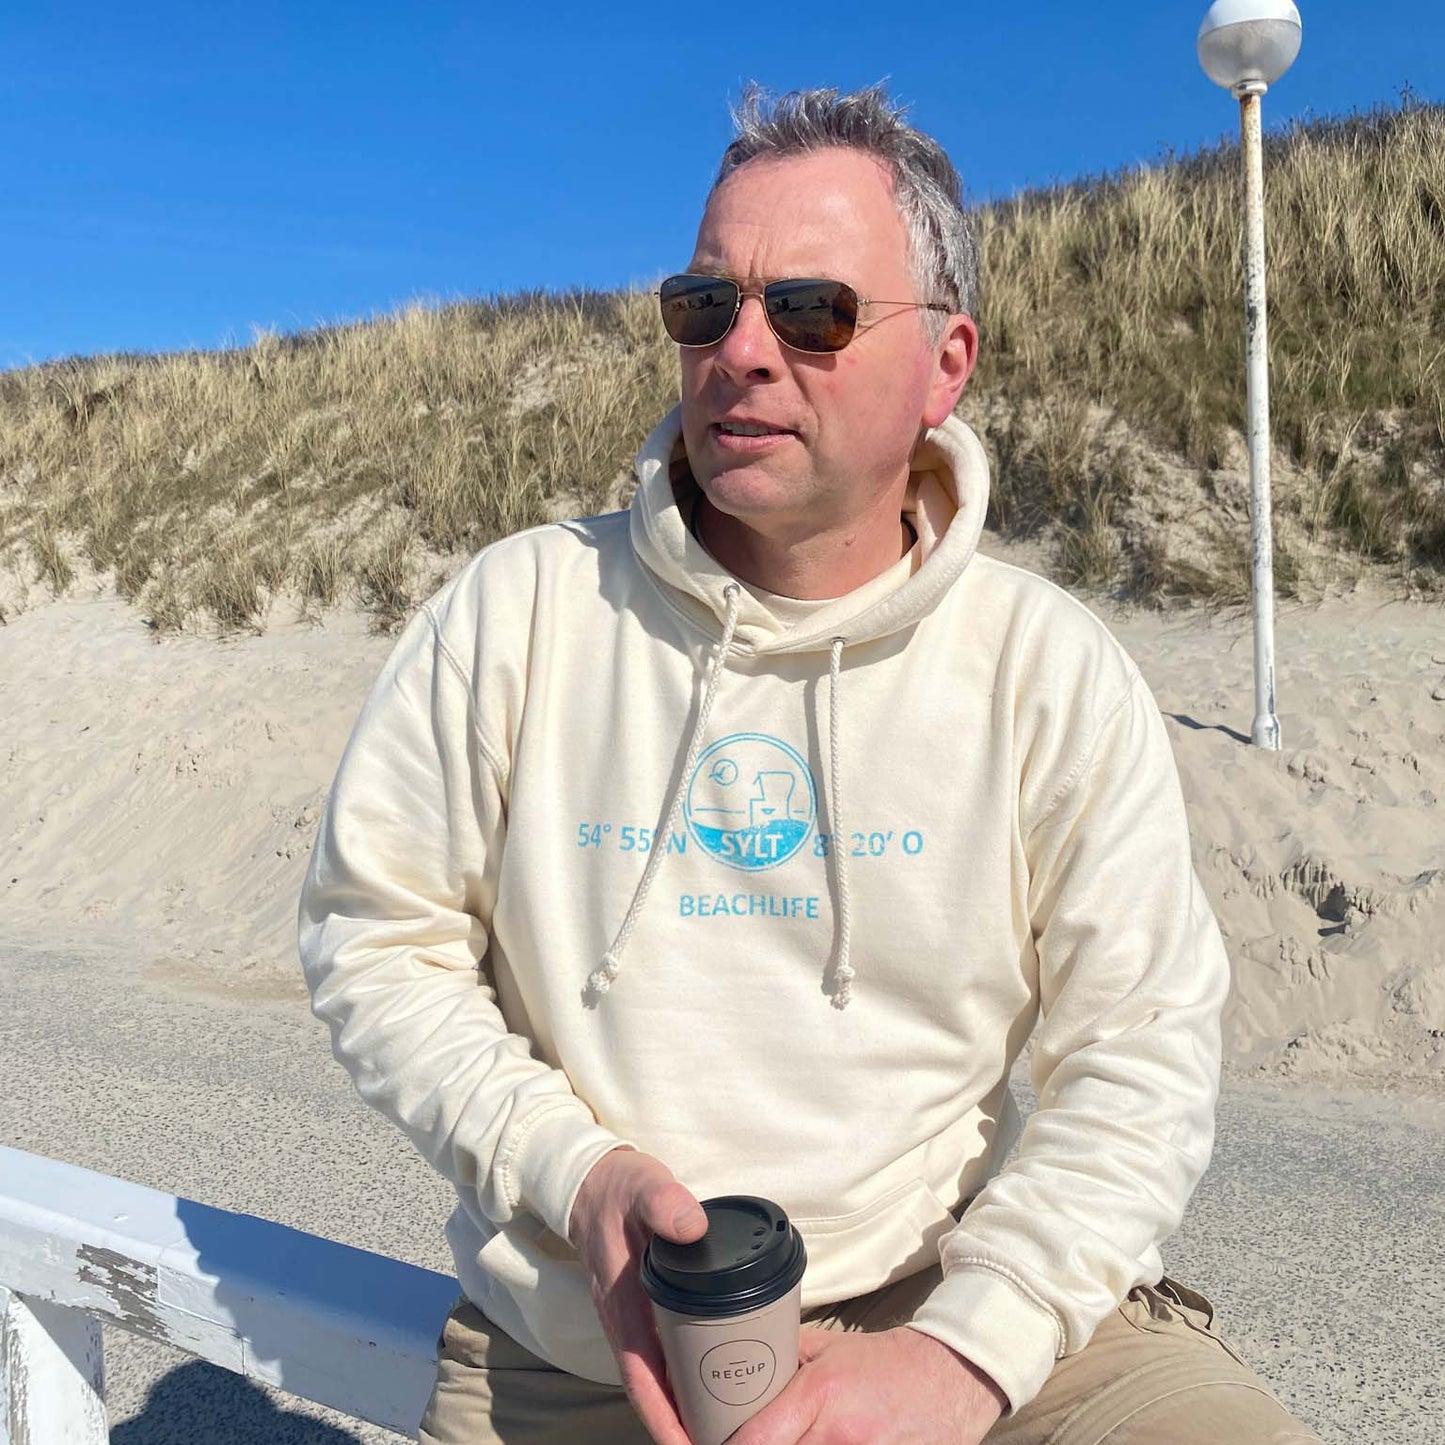 Mann sitzt mit Coffee to go Becher am Sylter Strand und hat einen Hellbeigen Hoodie an. Der Hoodie ist in türkis mit den Koordinaten von Sylt, dem Begriff Sylt sowie einer Grafik von einem Sylter Nordsee-Strandkorb bedruckt. Darunter ist der begriff Beschlief aufgedruckt.